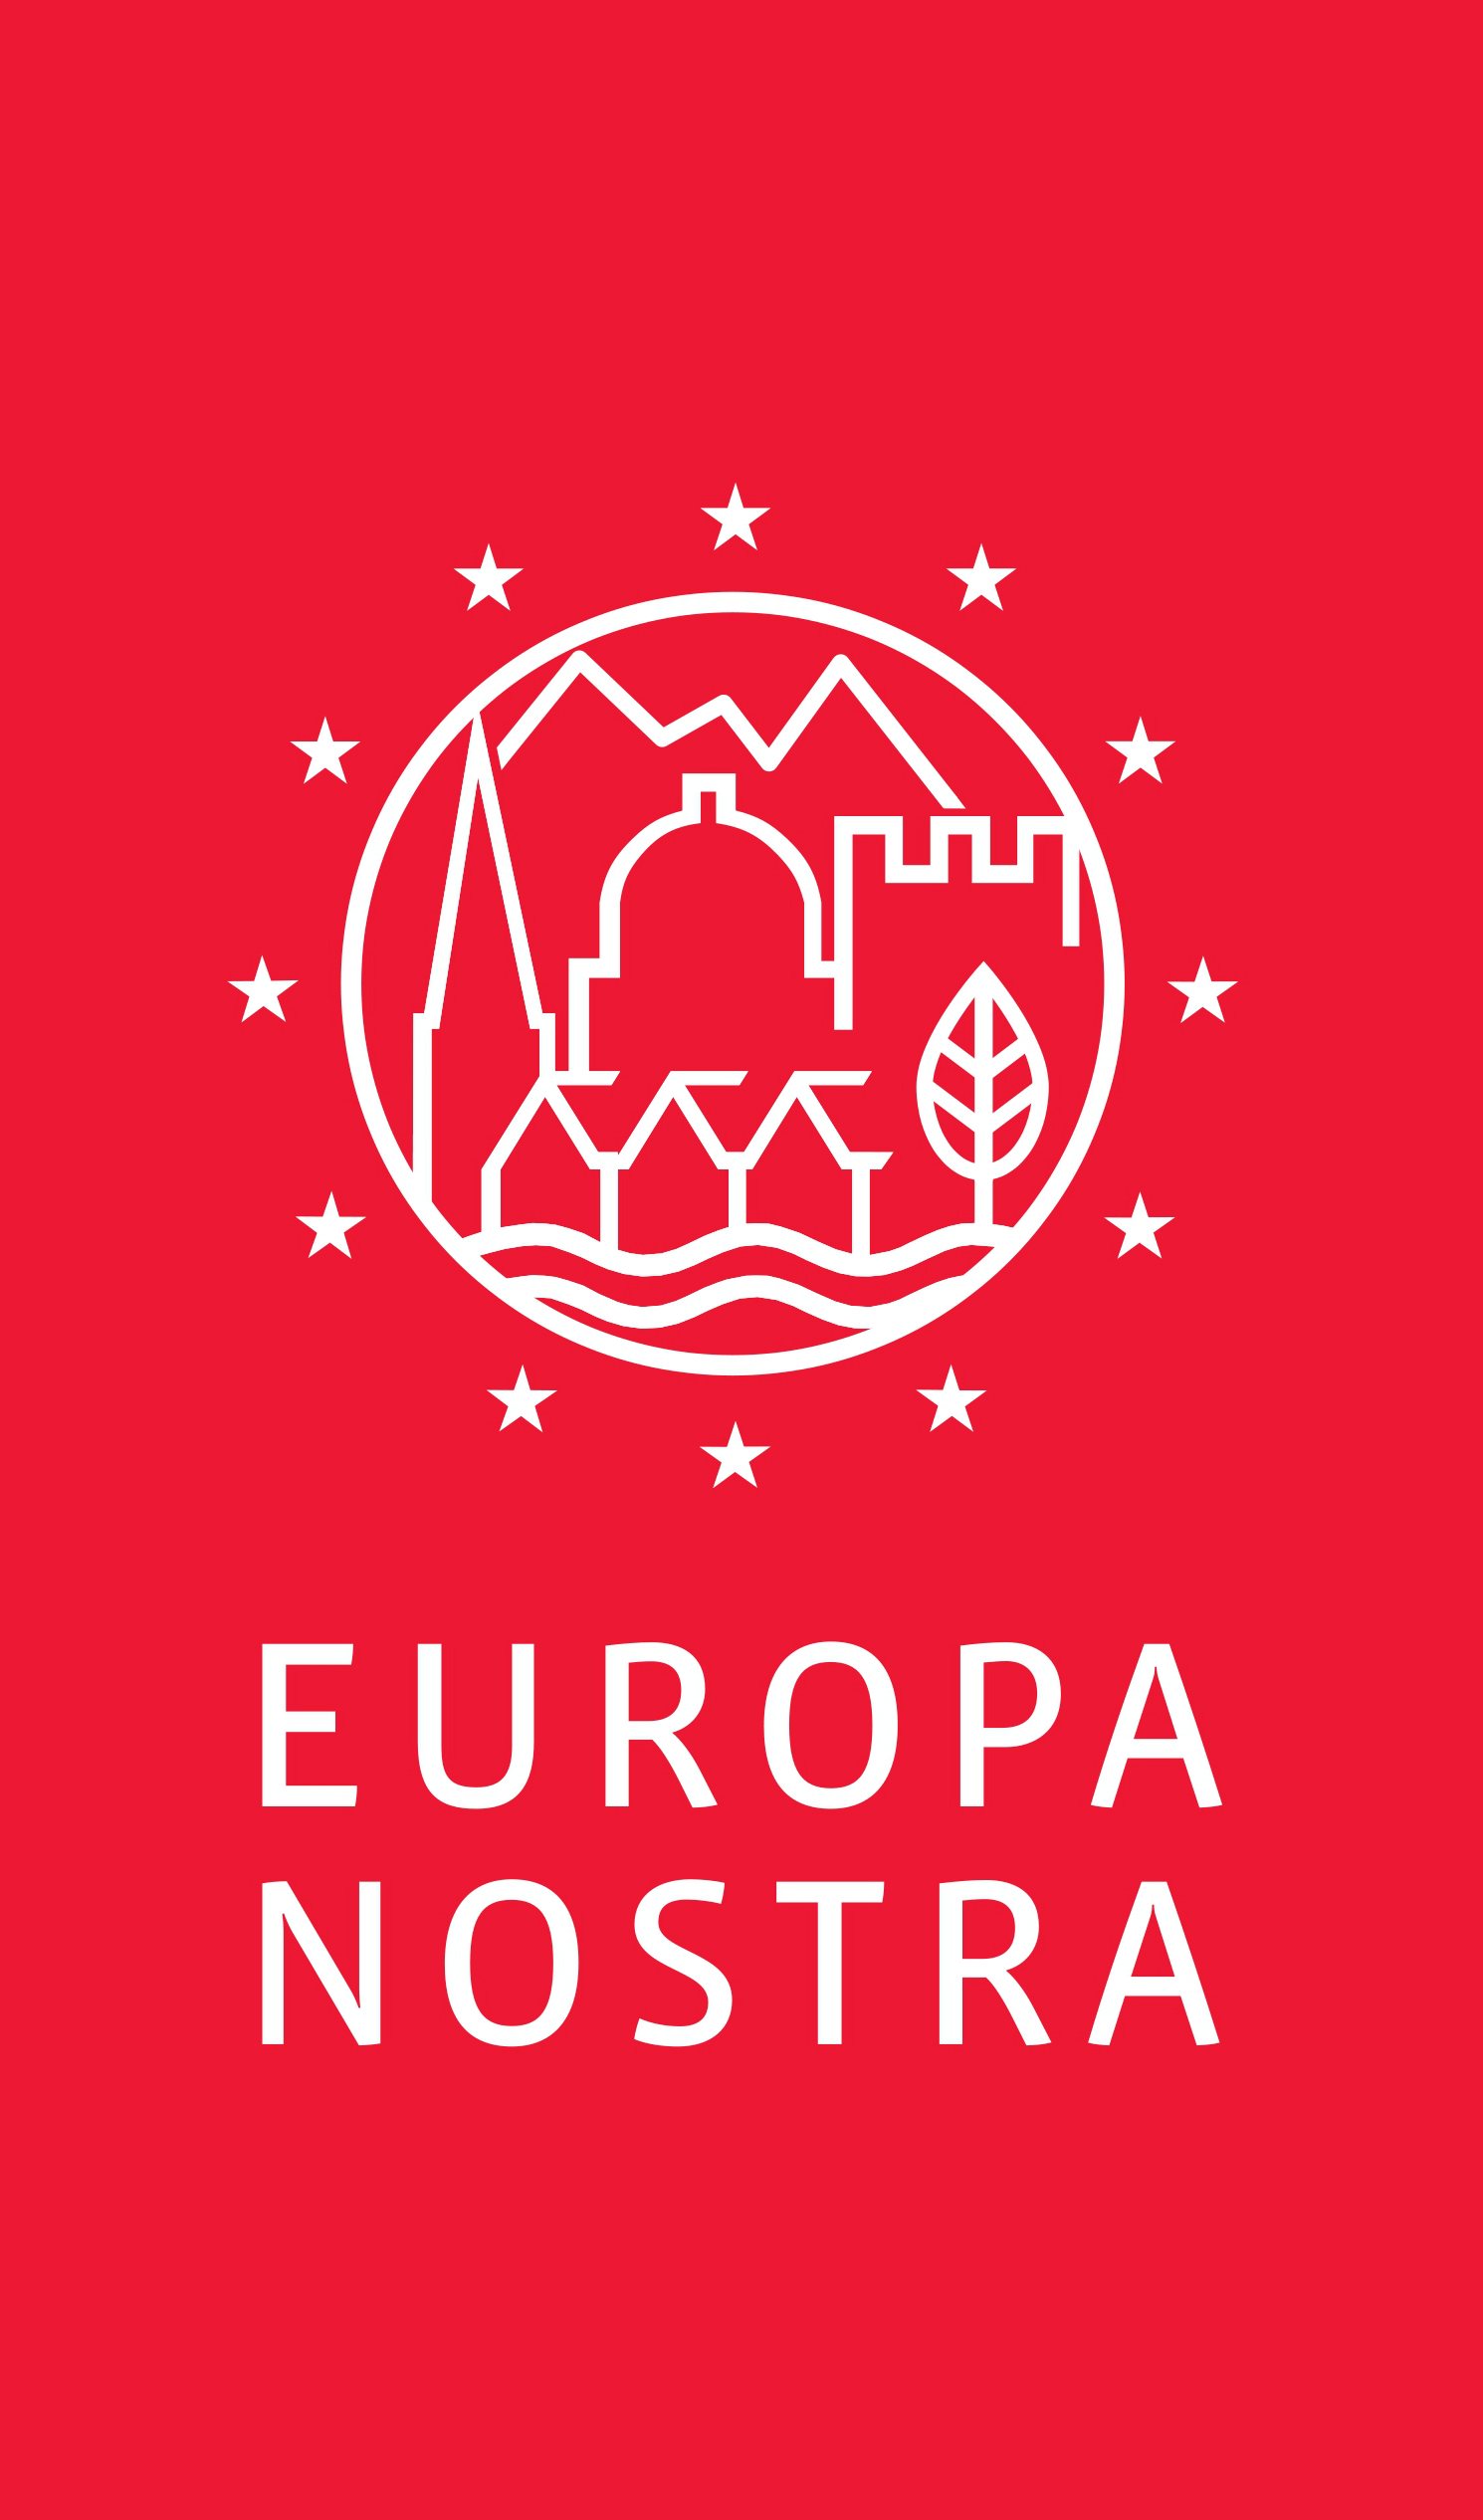 Logo Europa Nostra: czerwony pionowy prostokąt, na górze białe kontury: w koło wpisane ikony gór, dachów, drzewa i rzeki, dookoła koła 12 białych gwiazd z flagii Unii Europejskiej, pod spodem napis: Europa Nostra